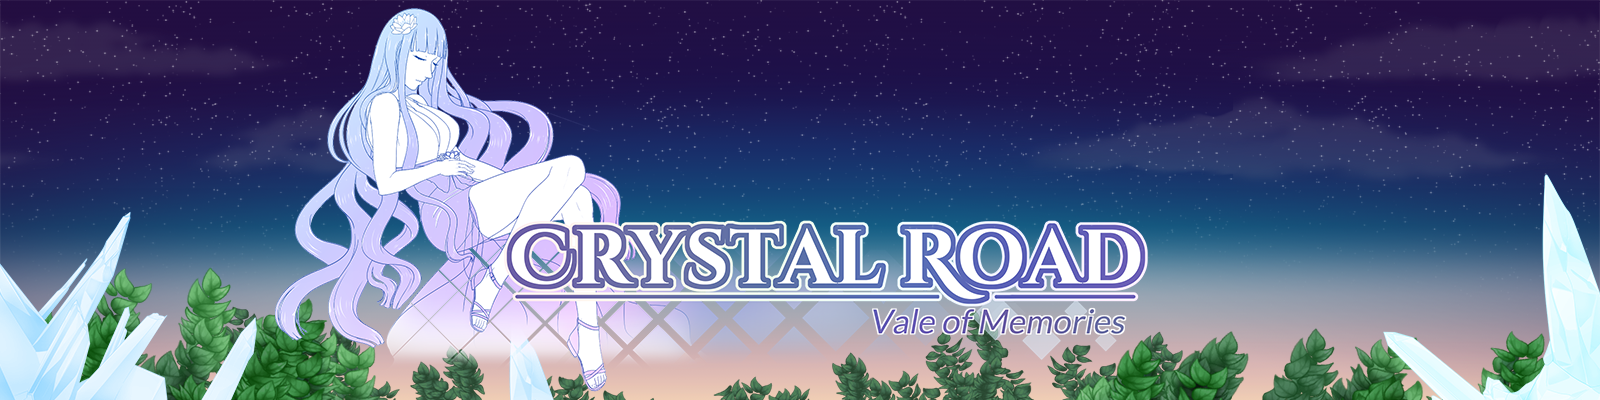 Crystal Road - Vale of Memories